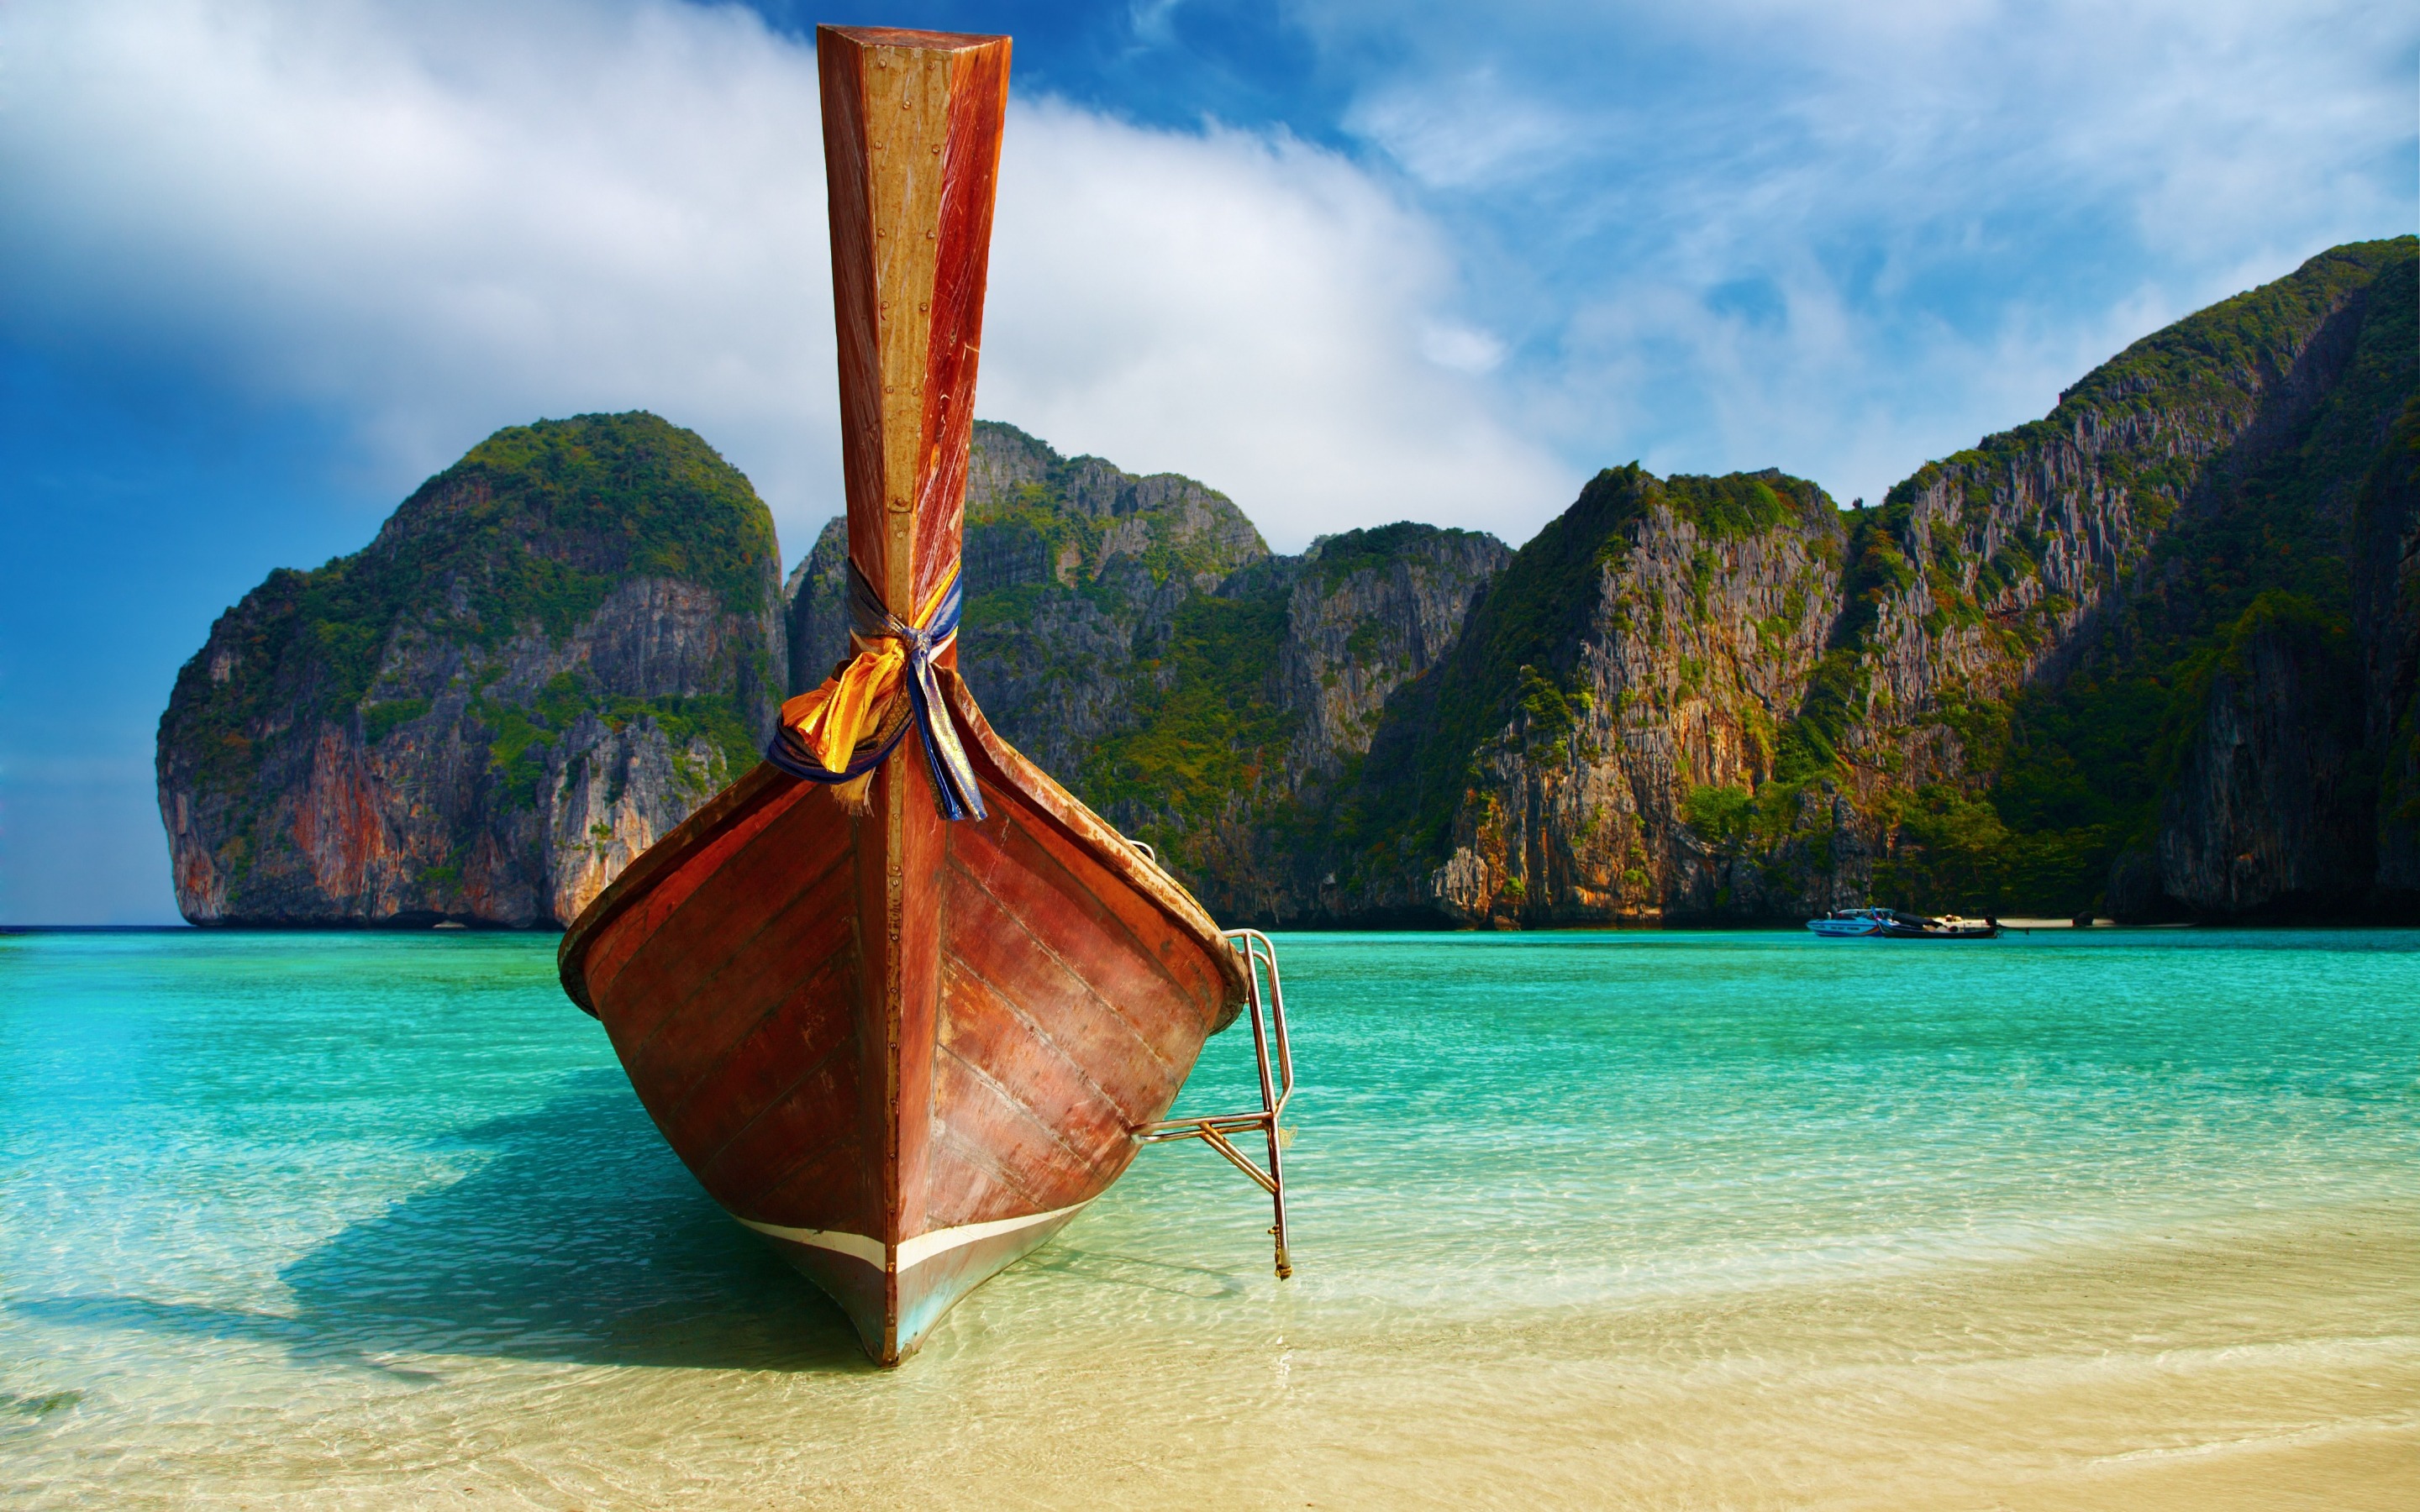 Download wallpaper Phi Phi Islands, sea, beach, boat